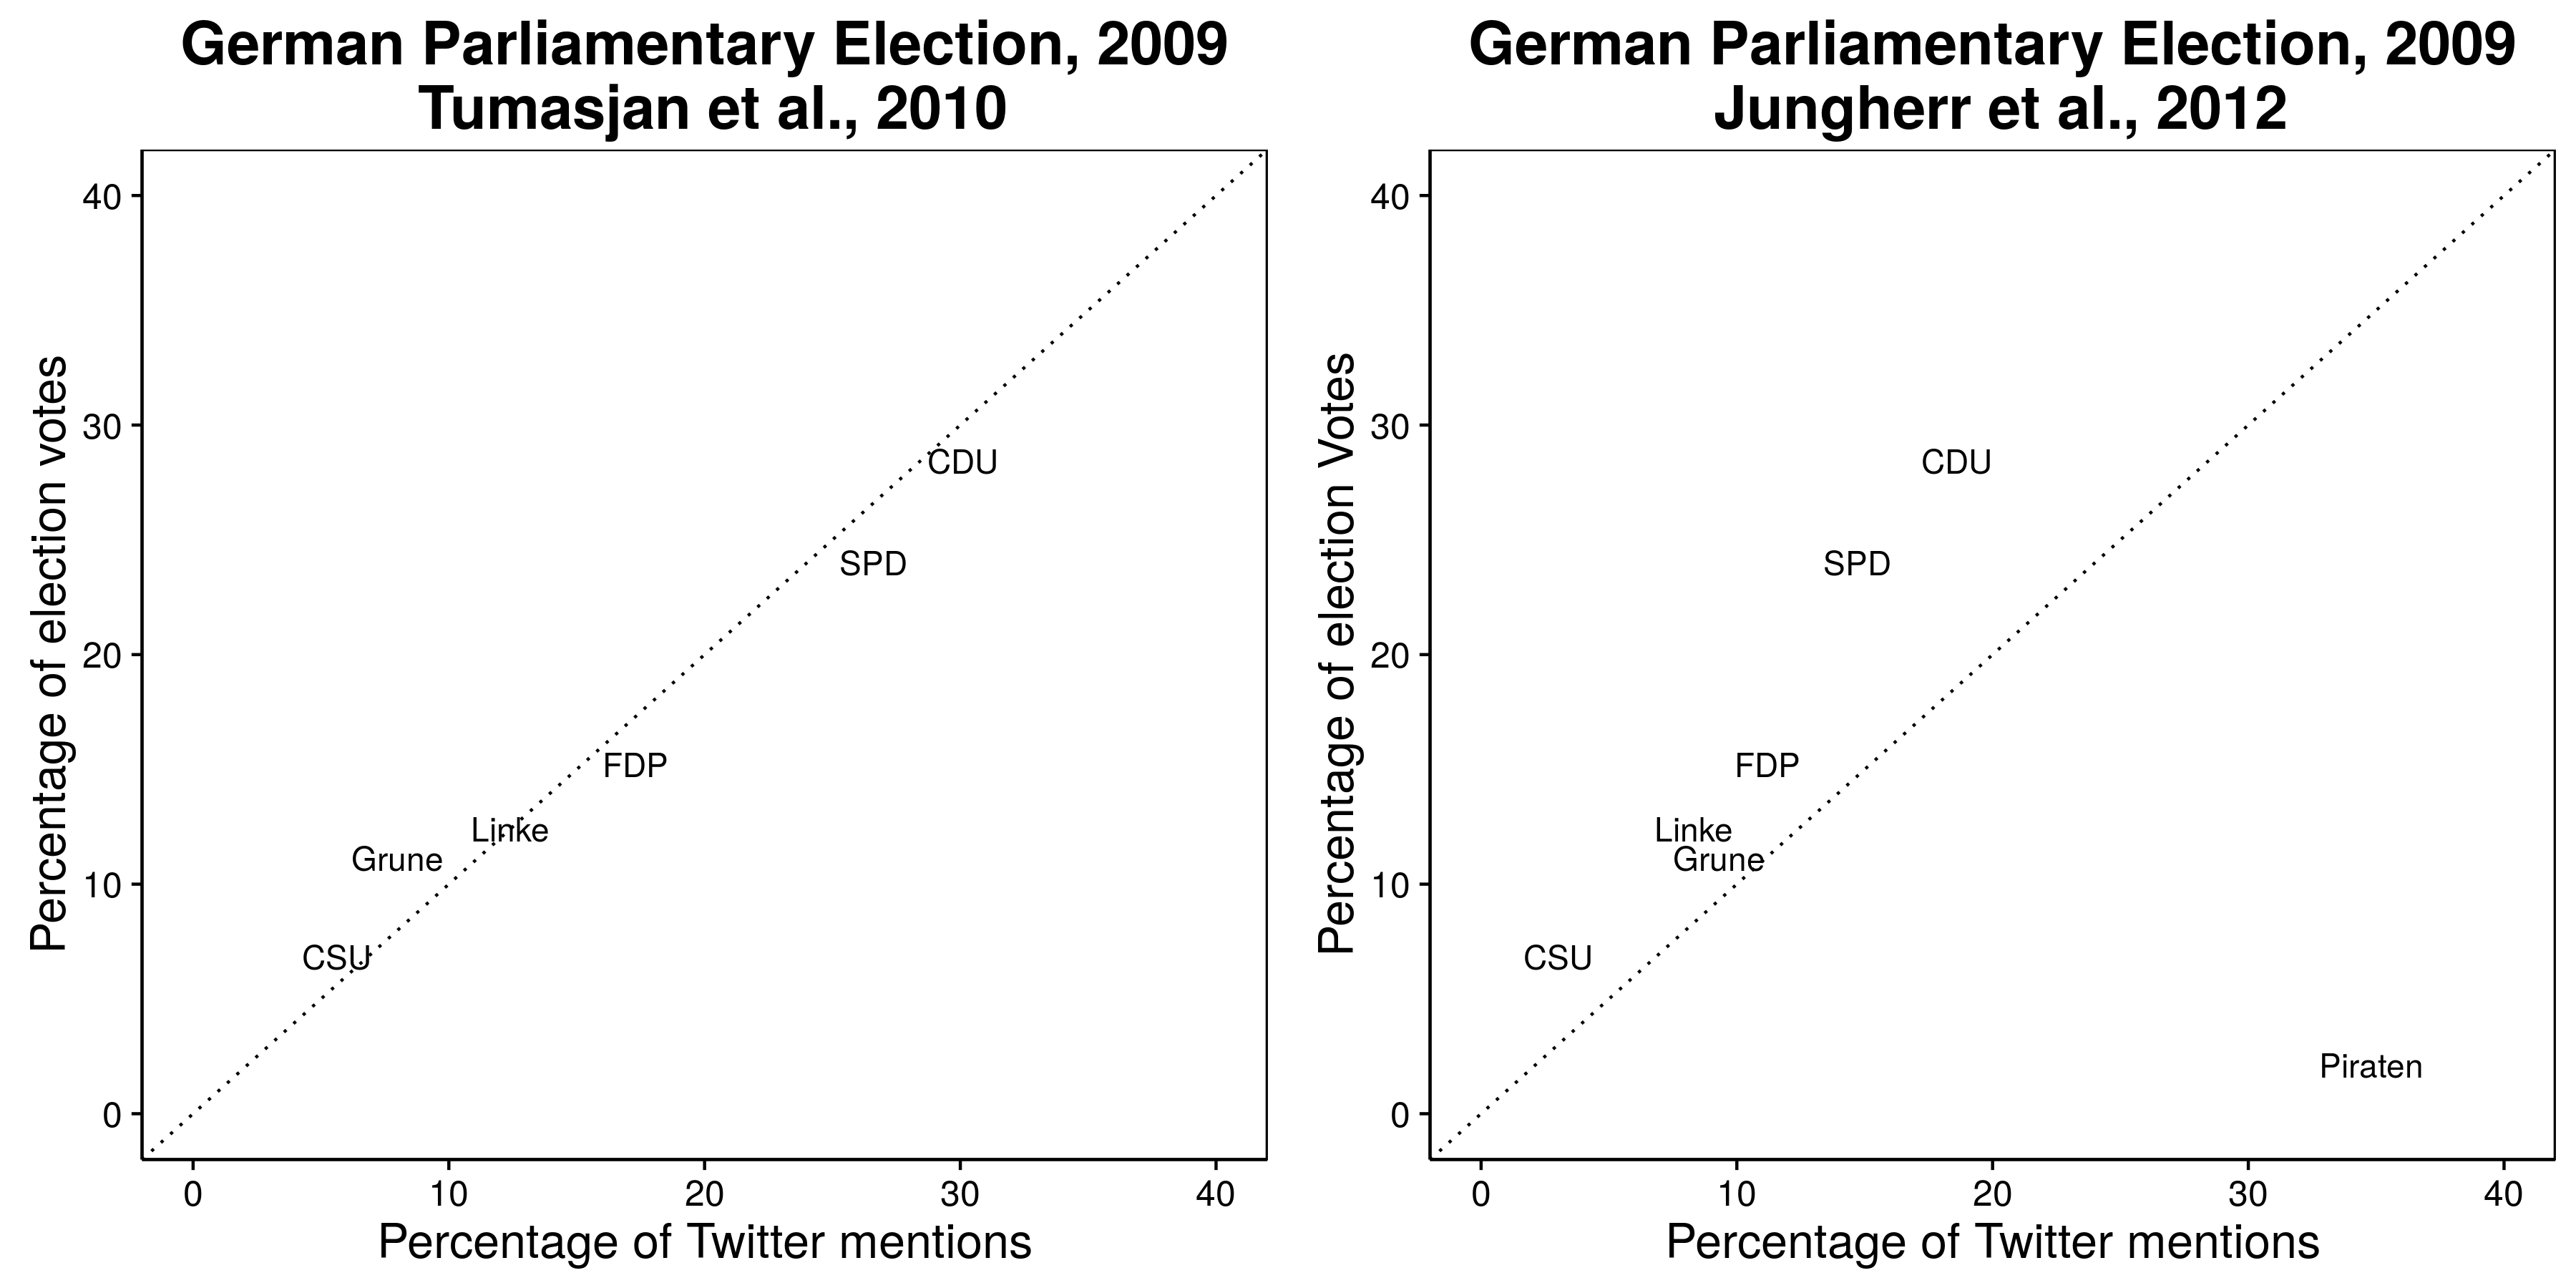 Գծապատկեր 2.3. Թվիթերը նշում են, որ կանխատեսում են 2009 թ. Գերմանիայի ընտրությունների արդյունքները (Tumasjan et al., 2010), սակայն սա բացառվում է այն կուսակցությանը, որն ամենաշատը նշում է. Pirate Party (Jungherr, Jürgens, and Schoen 2012): Տես Թումասյան եւ այլն: (2012 թ.), Որպես ծագող կուսակցության բացառման օգտին փաստարկ: Հարմարեցված է Թումասյանի եւ այլոց կողմից: (2010 թ.), 4-րդ աղյուսակը եւ Ջունգհերրը, Յուրգենսը եւ Շոենը (2012), աղյուսակ 2: